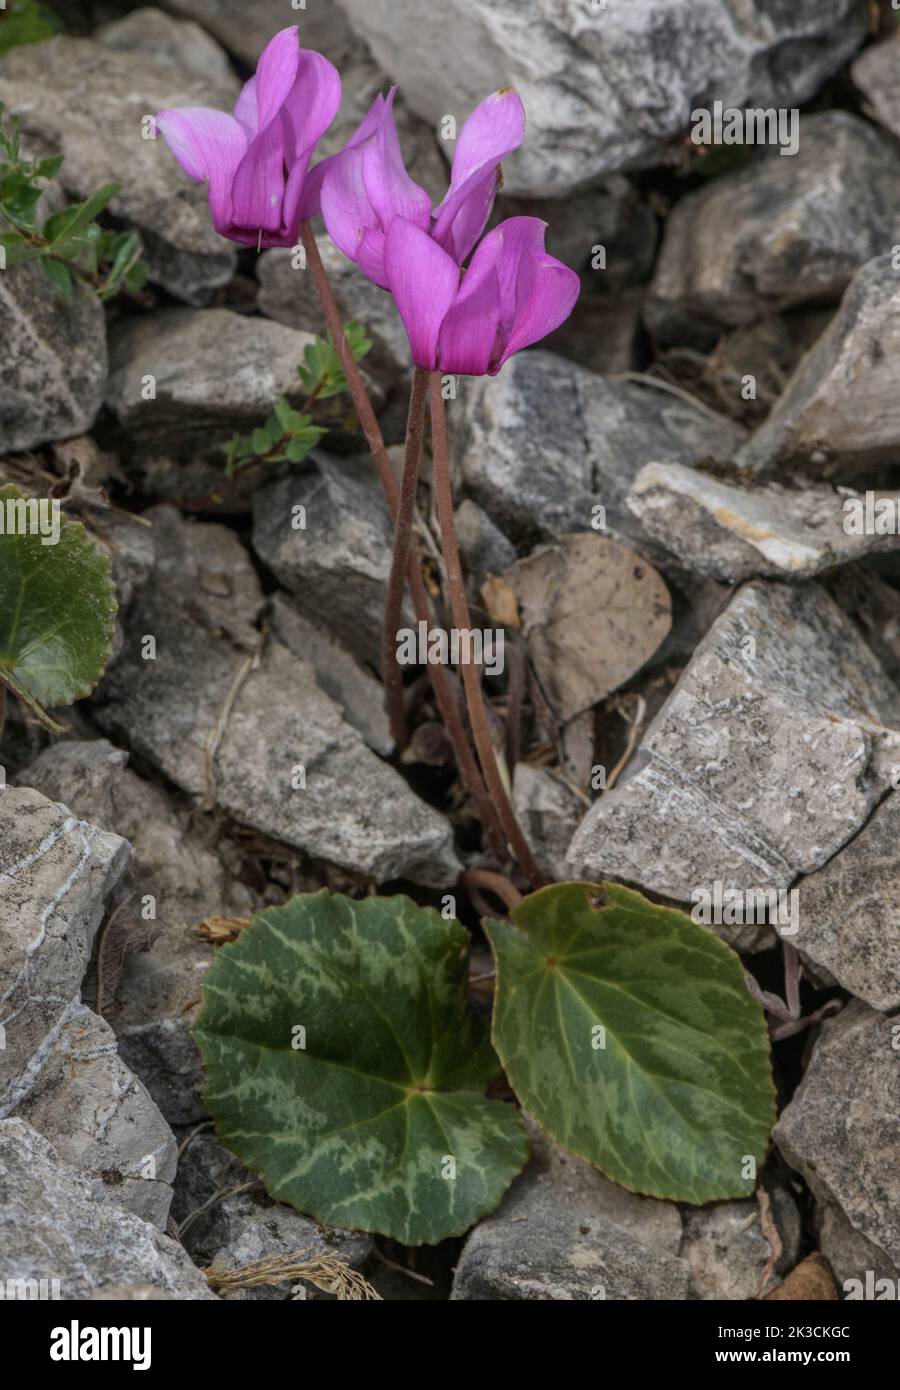 Alpine cyclamen, Cyclamen purpurascens, in flower on limestone slope in the Italian Alps. Stock Photo